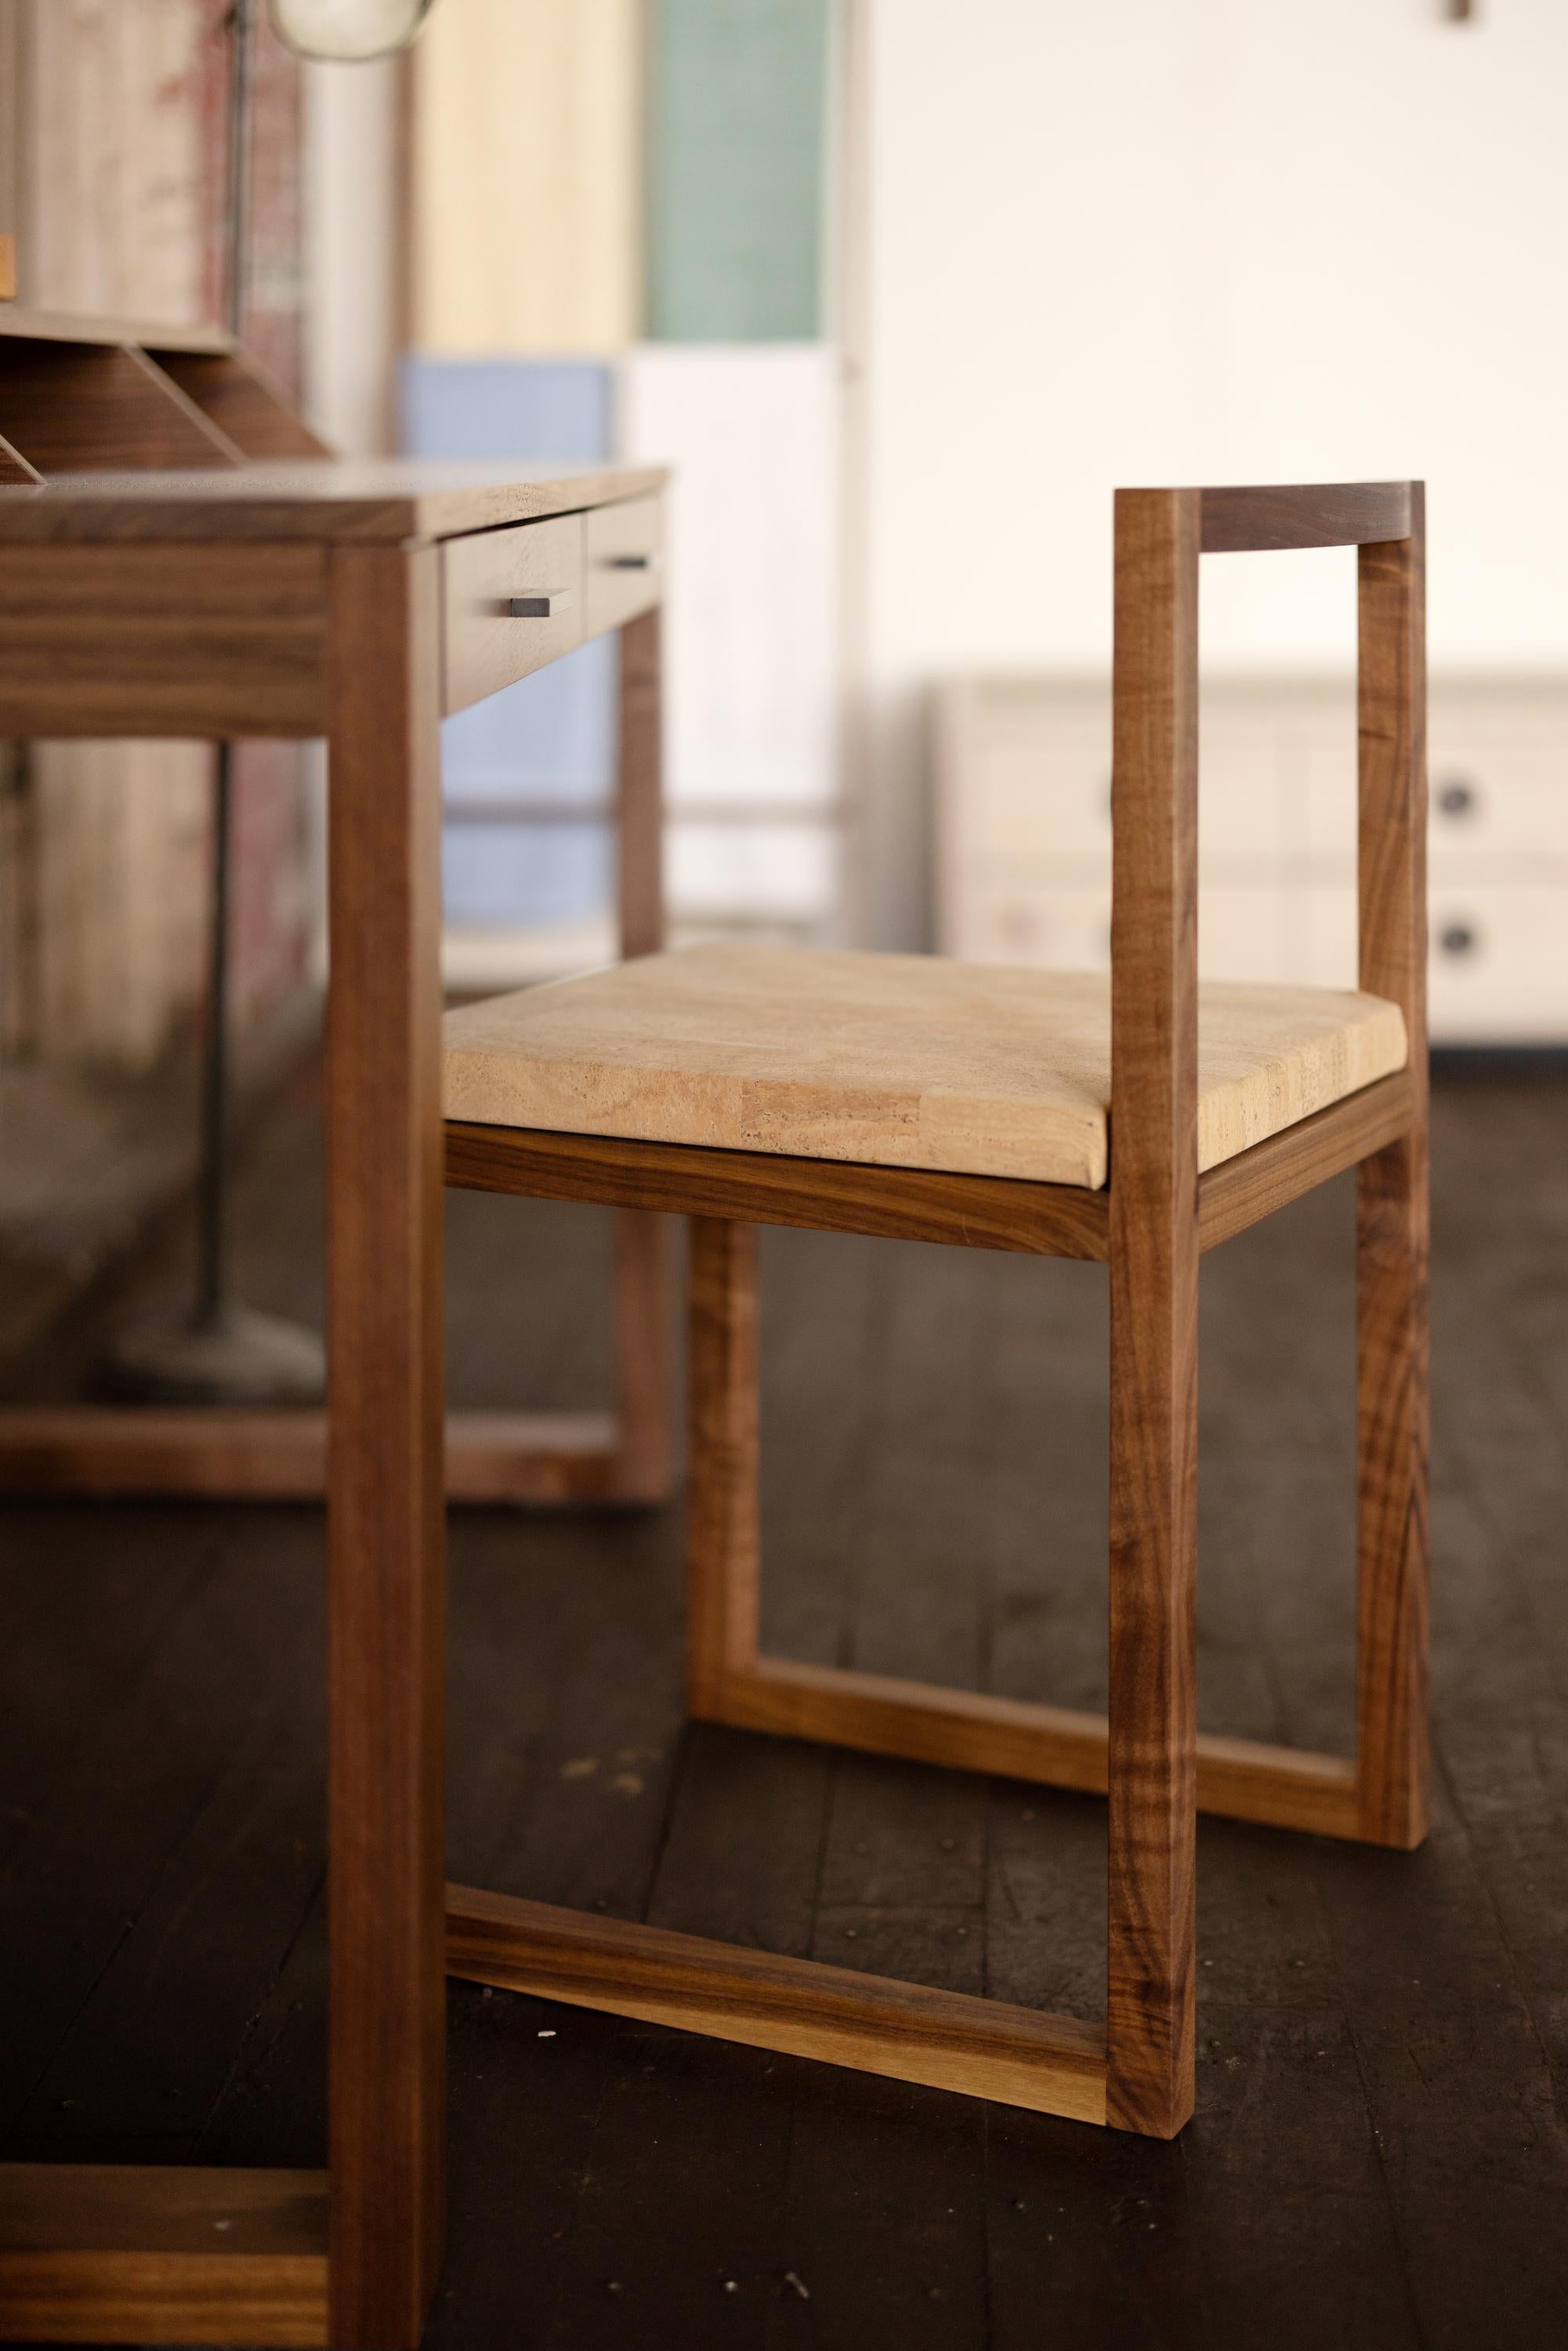 La chaise Porto incarne la fusion de l'élégance intemporelle et du minimalisme fonctionnel. Cette chaise aux lignes épurées complète votre table à manger ou votre bureau en bois urbain. Avec son design polyvalent, la chaise Porto s'adapte à